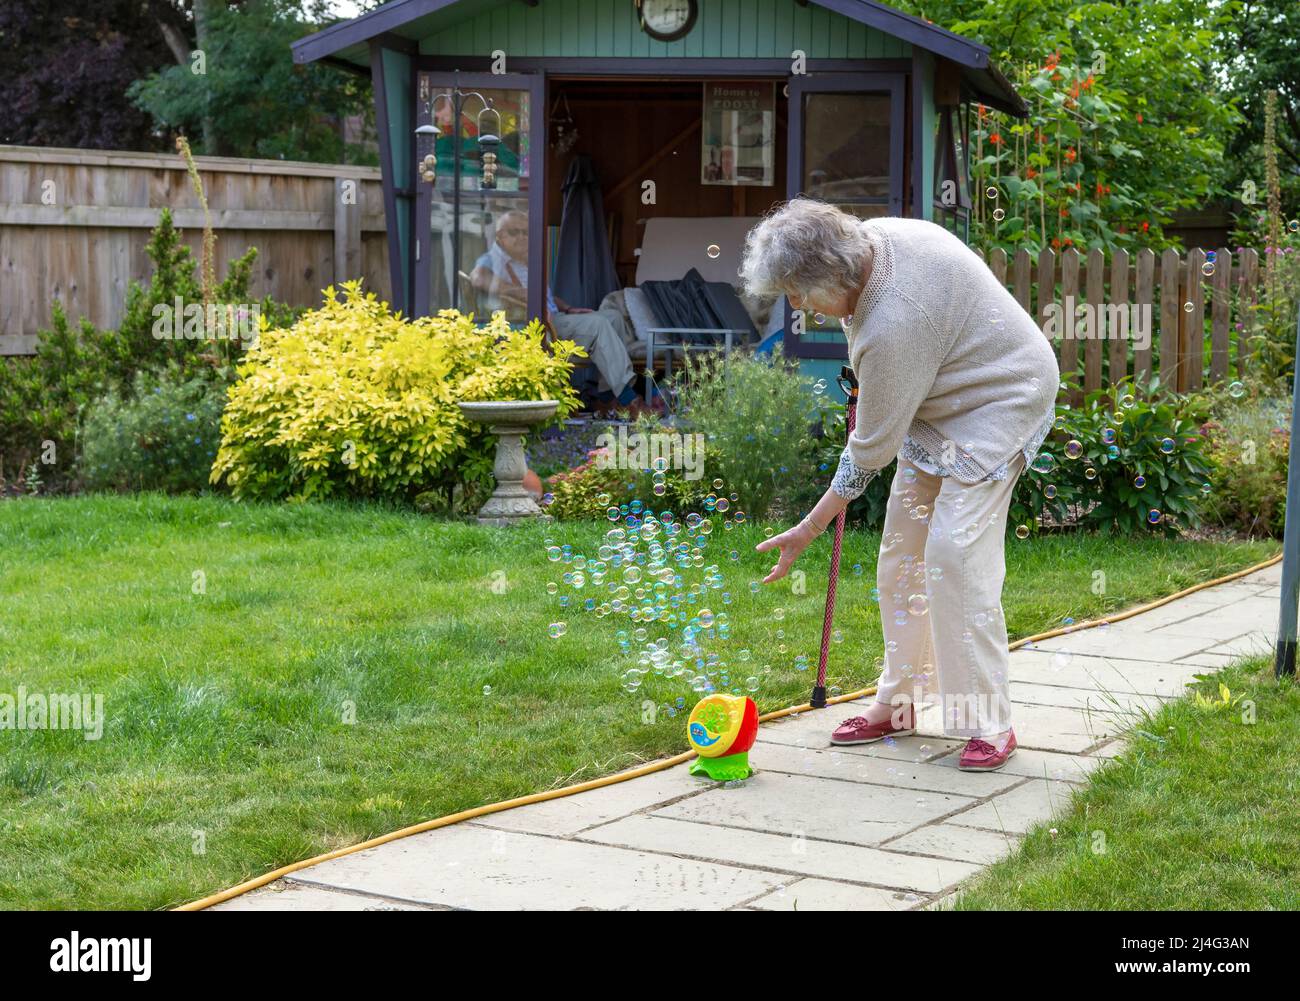 Großmutter, die Spaß mit Blasen im Garten hat und beweist, dass du nie zu alt bist, um ein Kind zu sein! Konzept der jungen Menschen im Herzen. Stockfoto